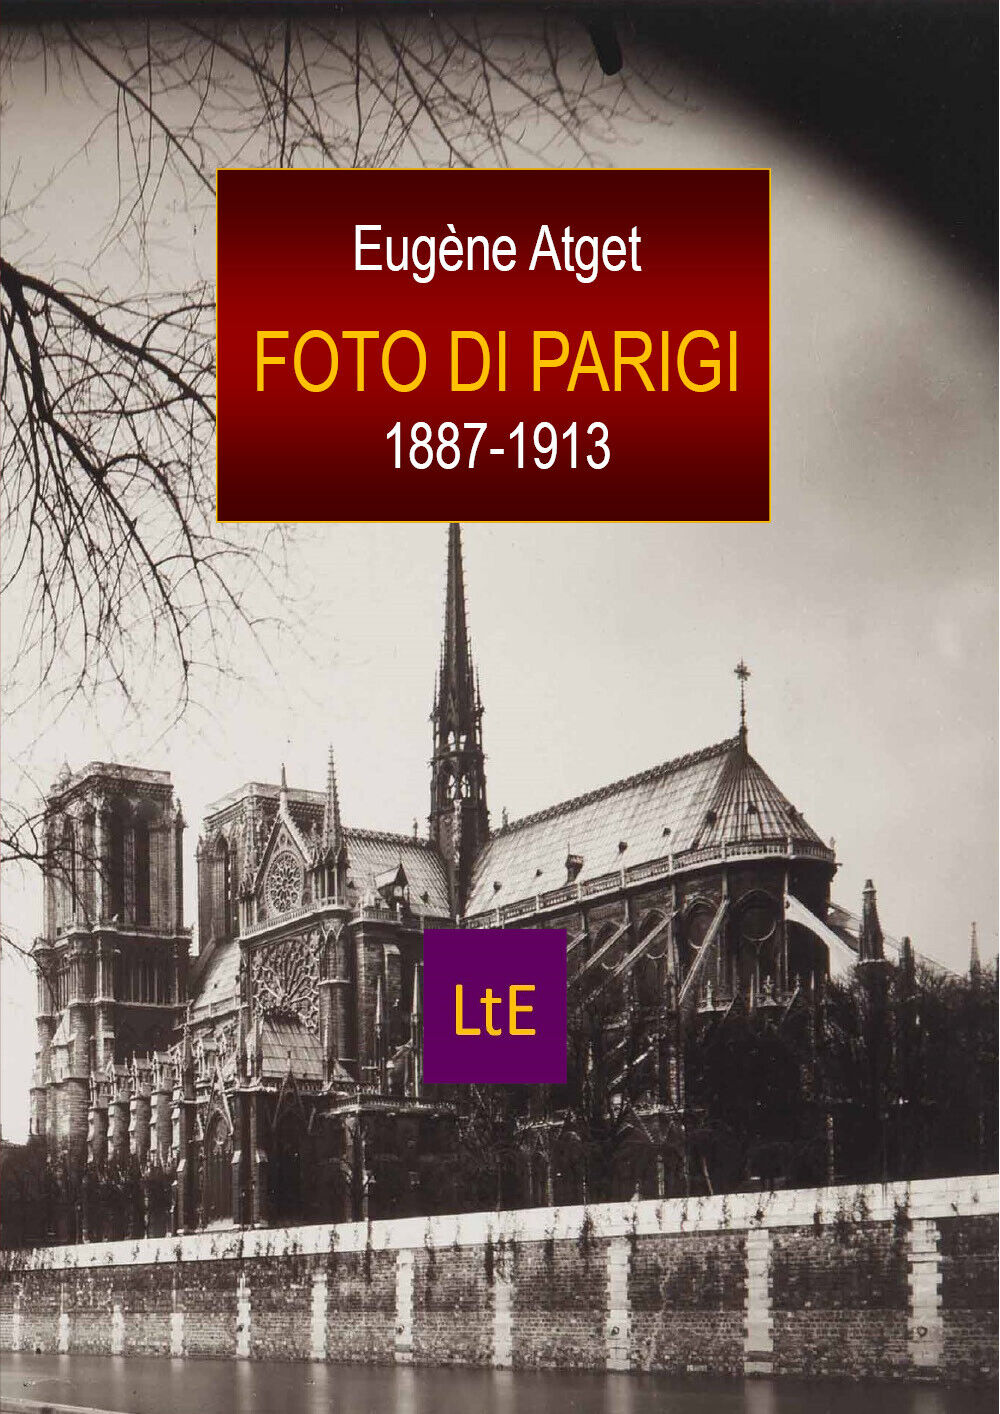 Foto di Parigi 1887-1913. Ediz. illustrata di Eug?ne Atget,  2021,  Latorre-edit